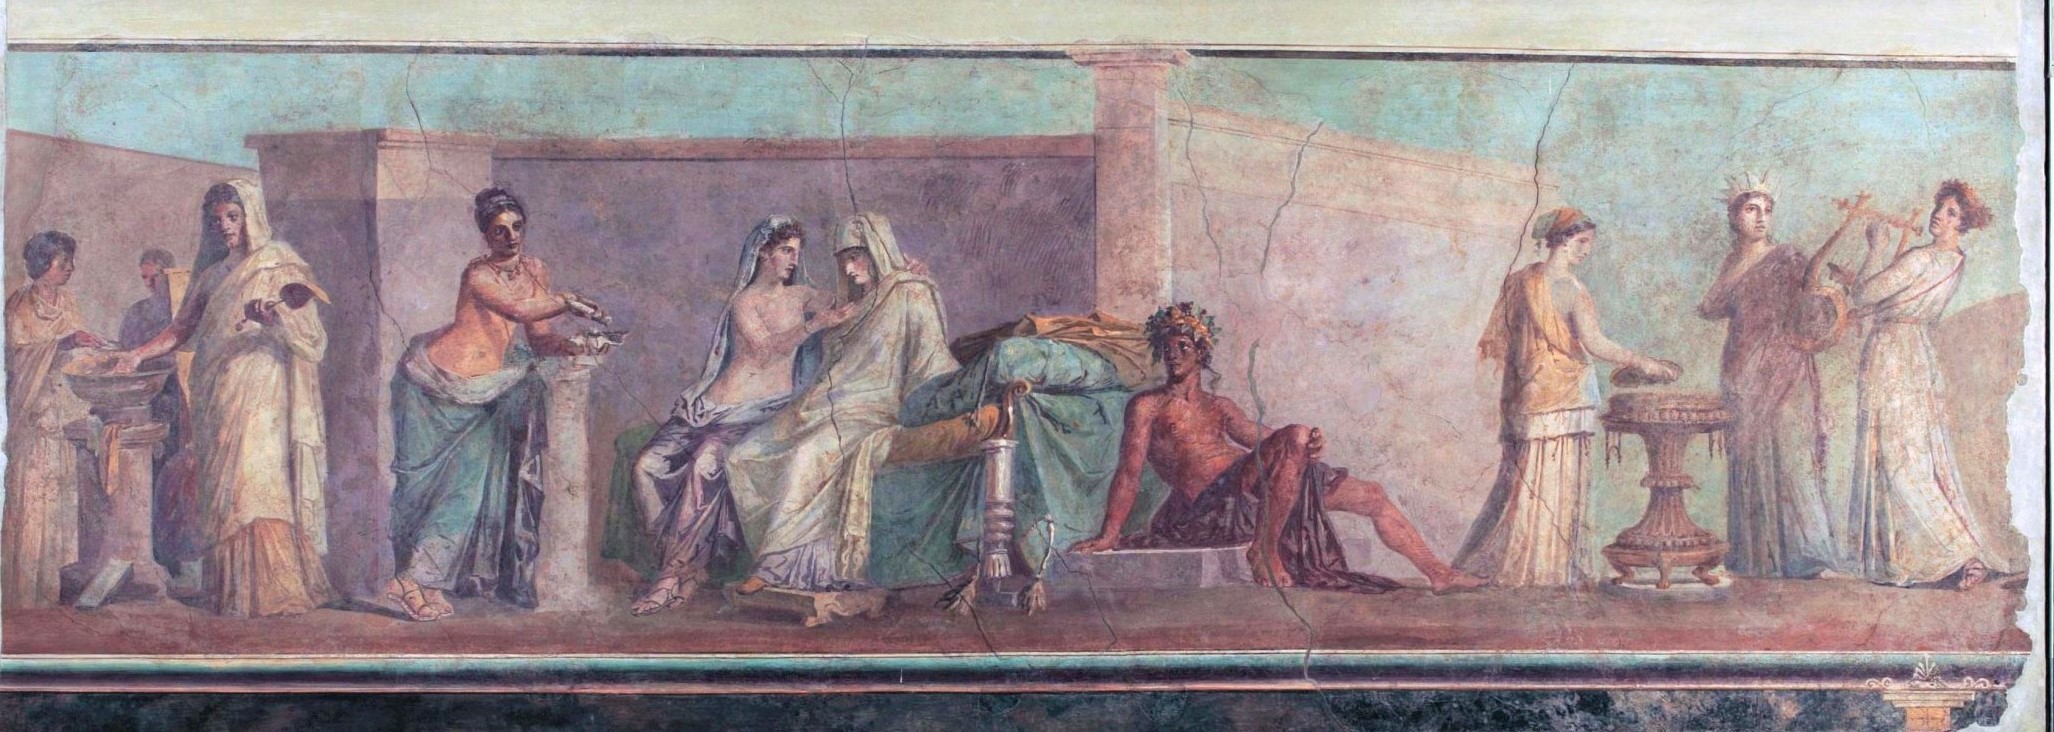 Fresco romano 'Las bodas albobrandinas' que da idea del colorismo en el arte antiguo.